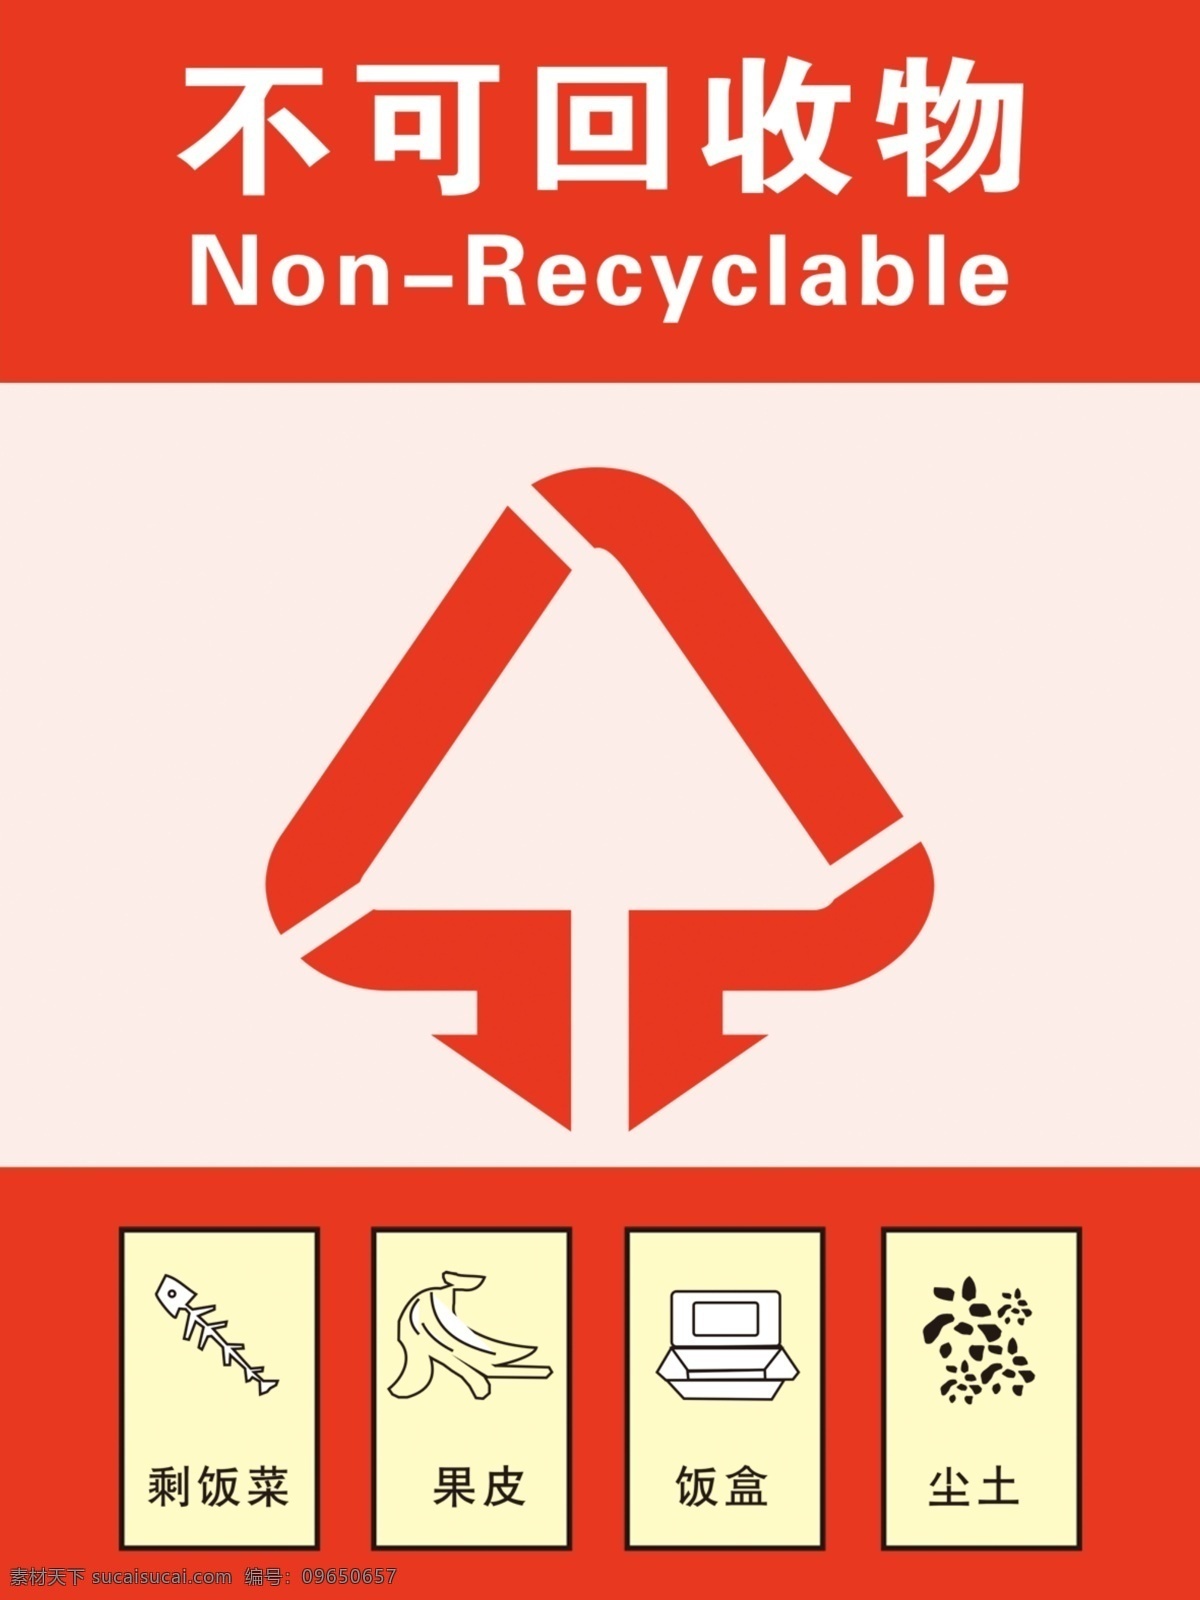 不可回收垃圾 温馨提示 提示 垃圾篓 可回收 垃圾桶 标识贴 分层